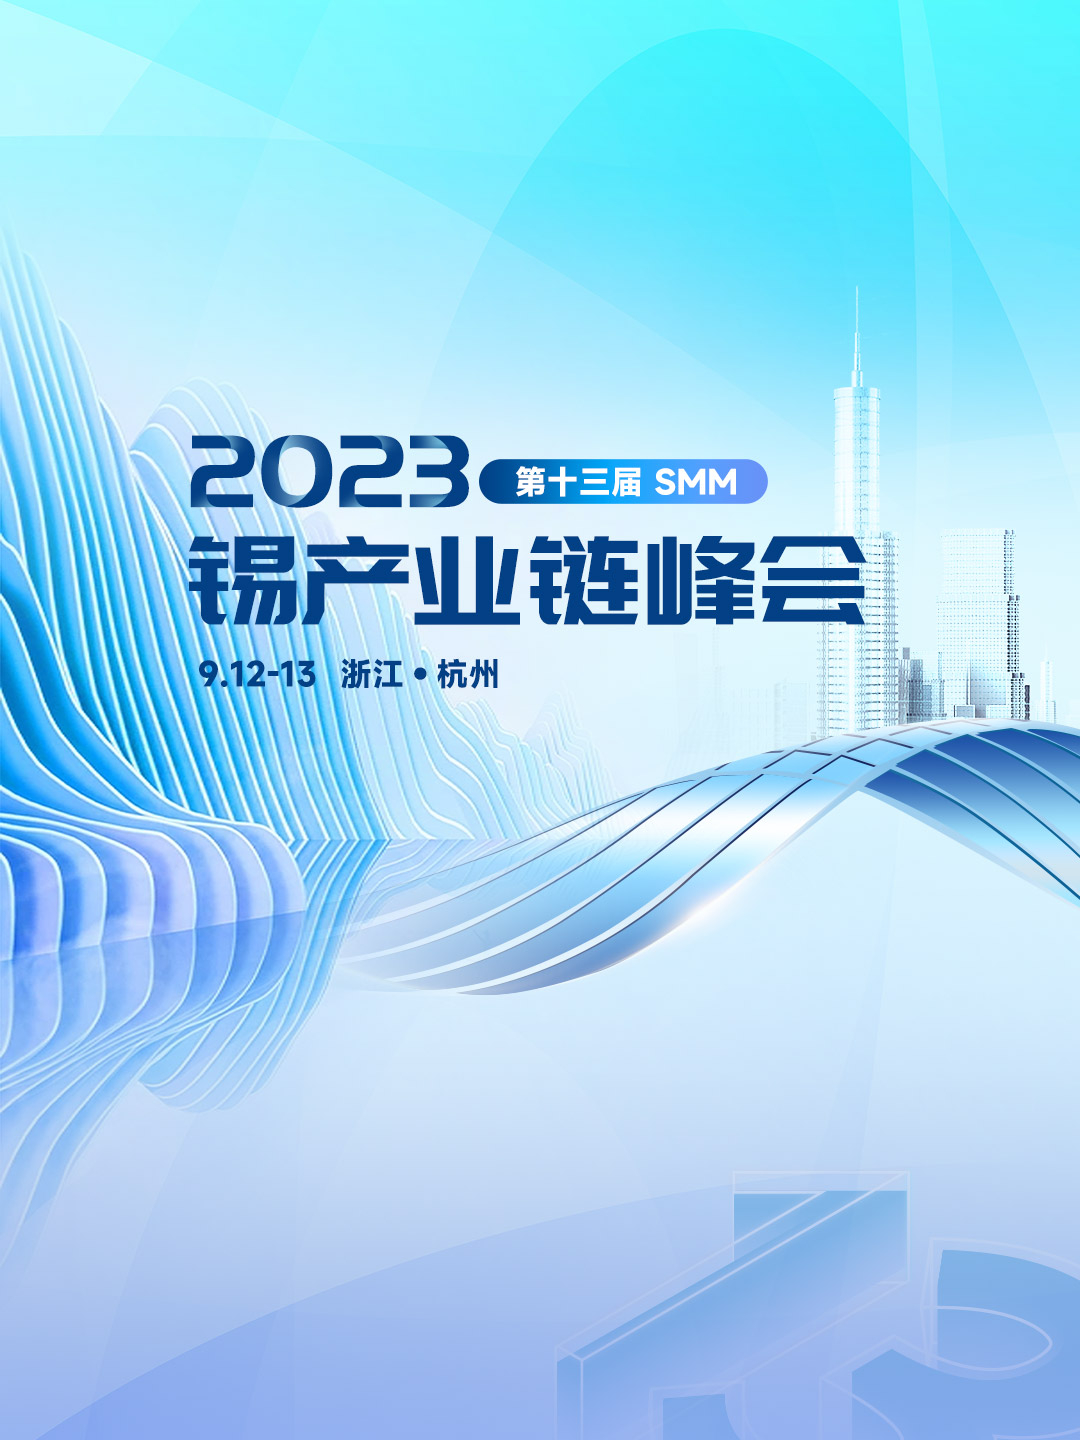 2023 SMM (第十三届) 锡产业链峰会